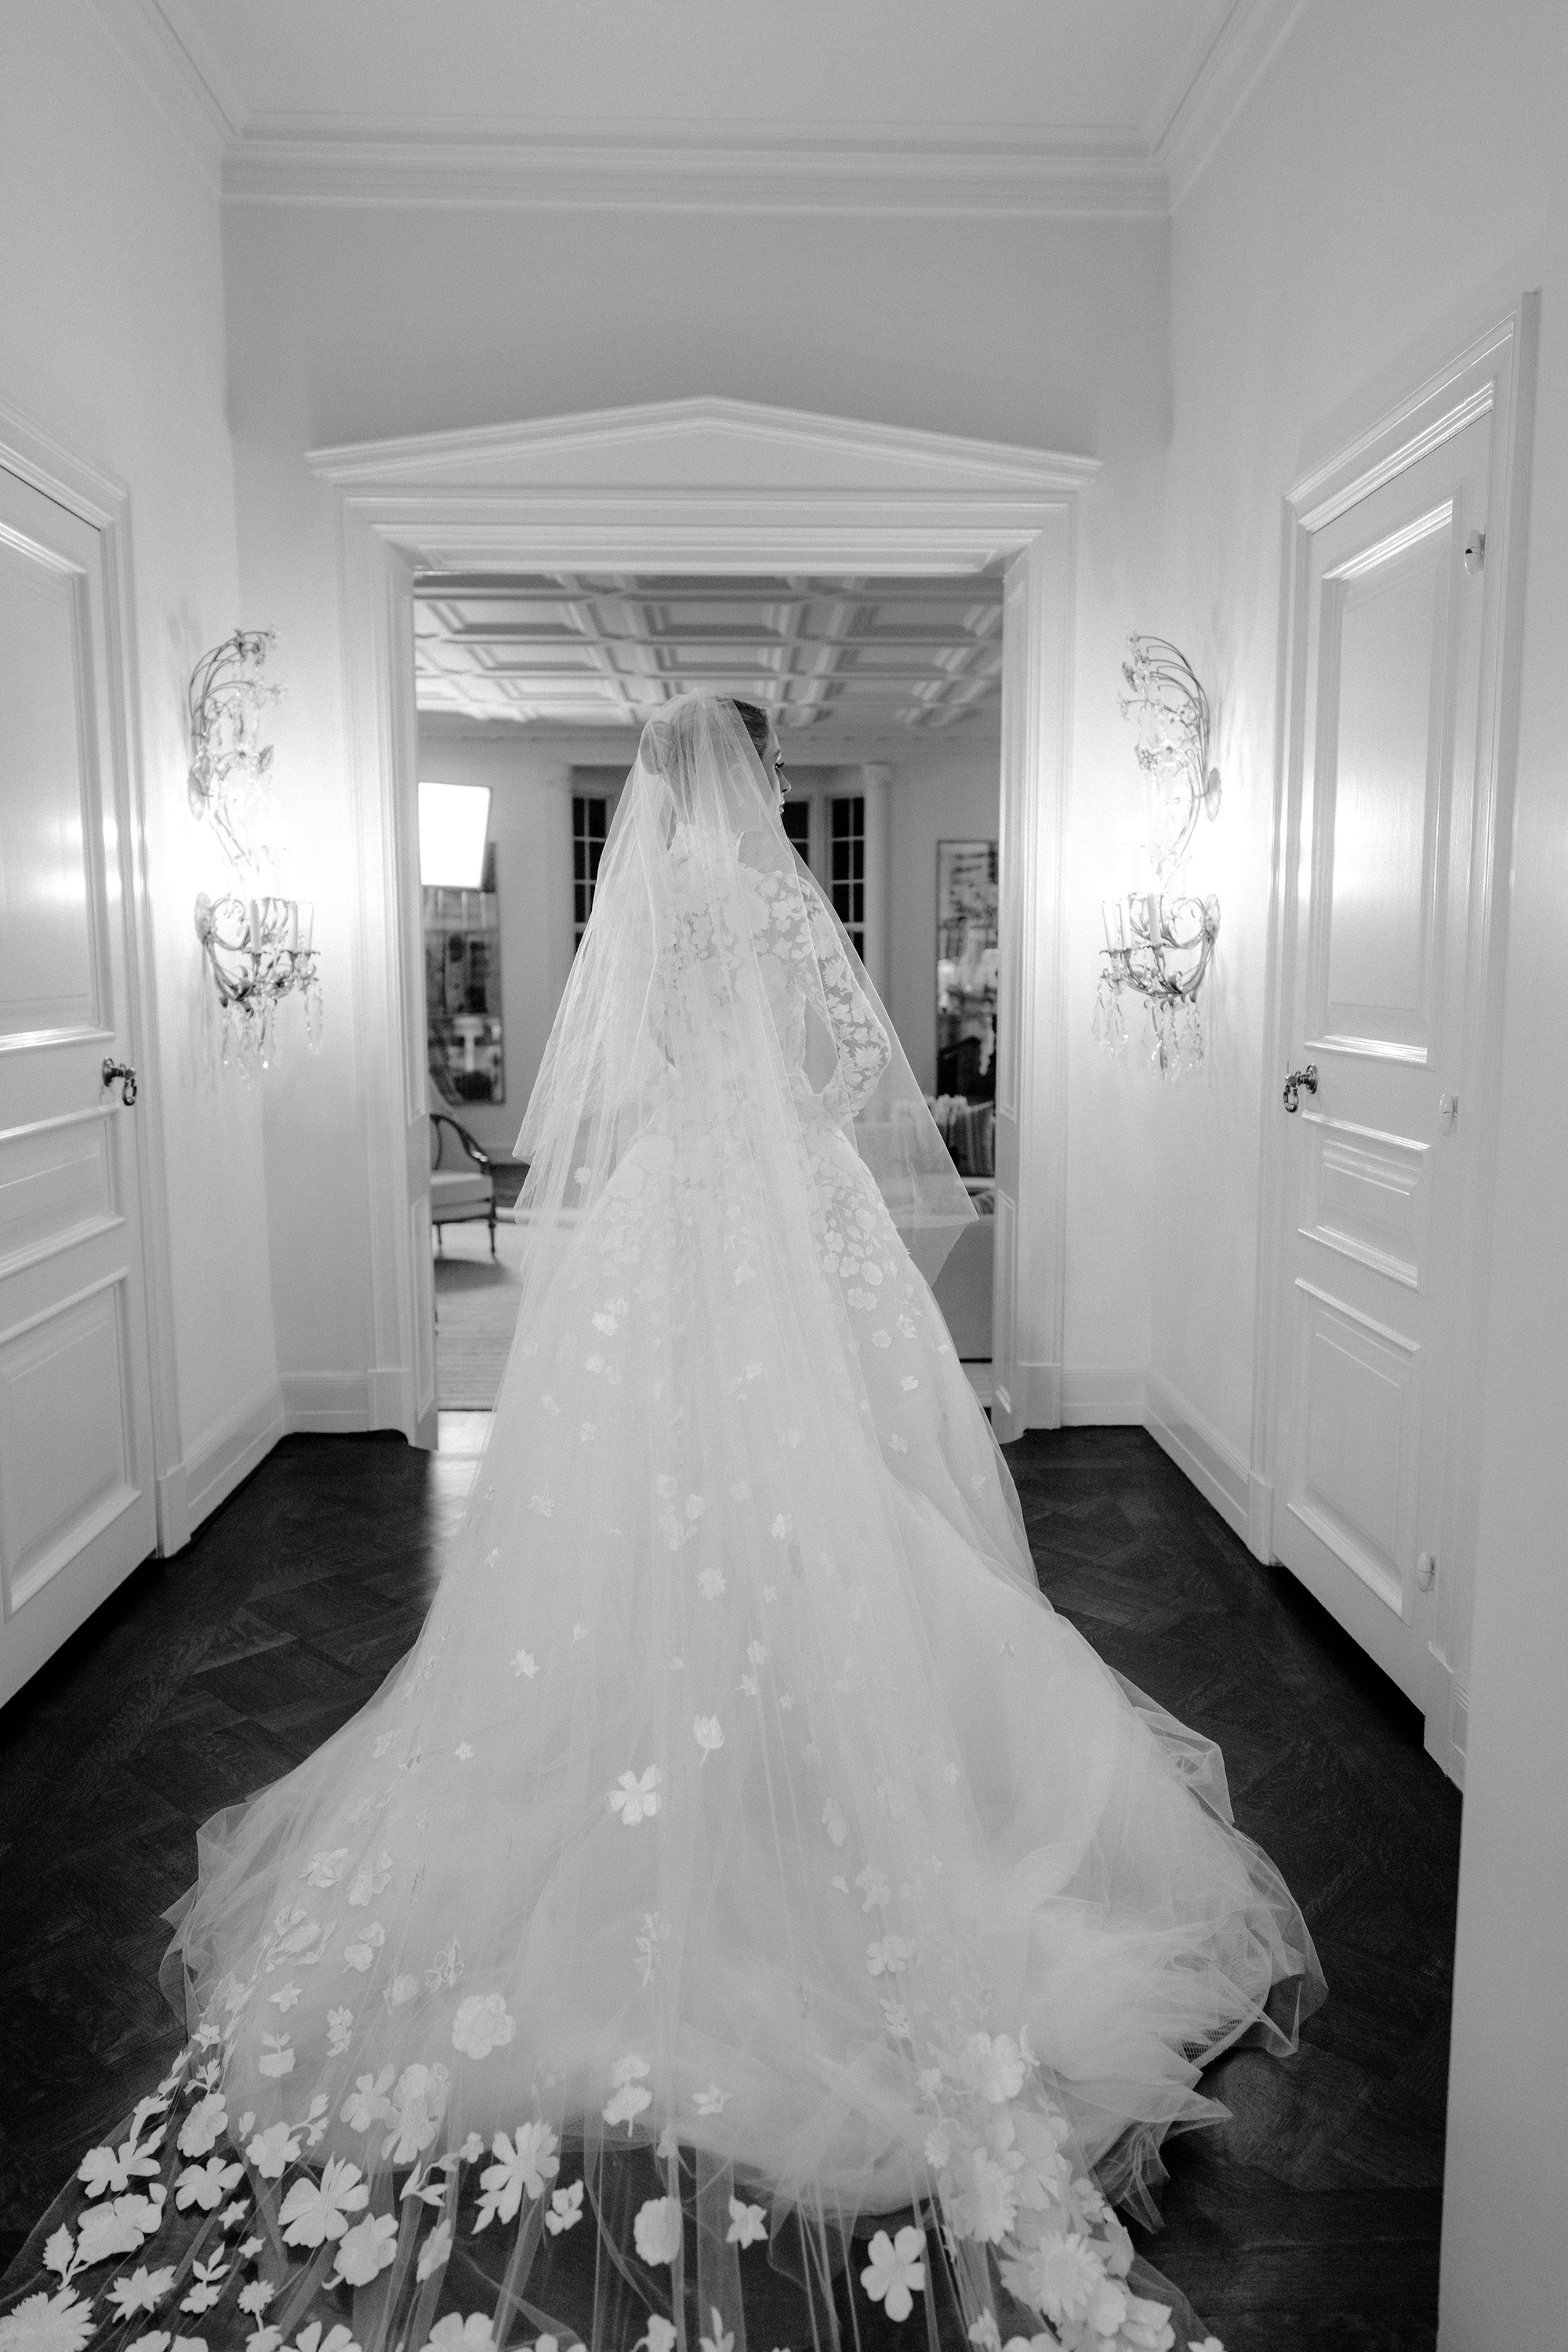 Cận cảnh 4 bộ váy cưới xa hoa trong hôn lễ Paris Hilton: Chỉ có duy nhất 1 bộ là kín đáo, còn lại đều theo style căng cực - Ảnh 3.